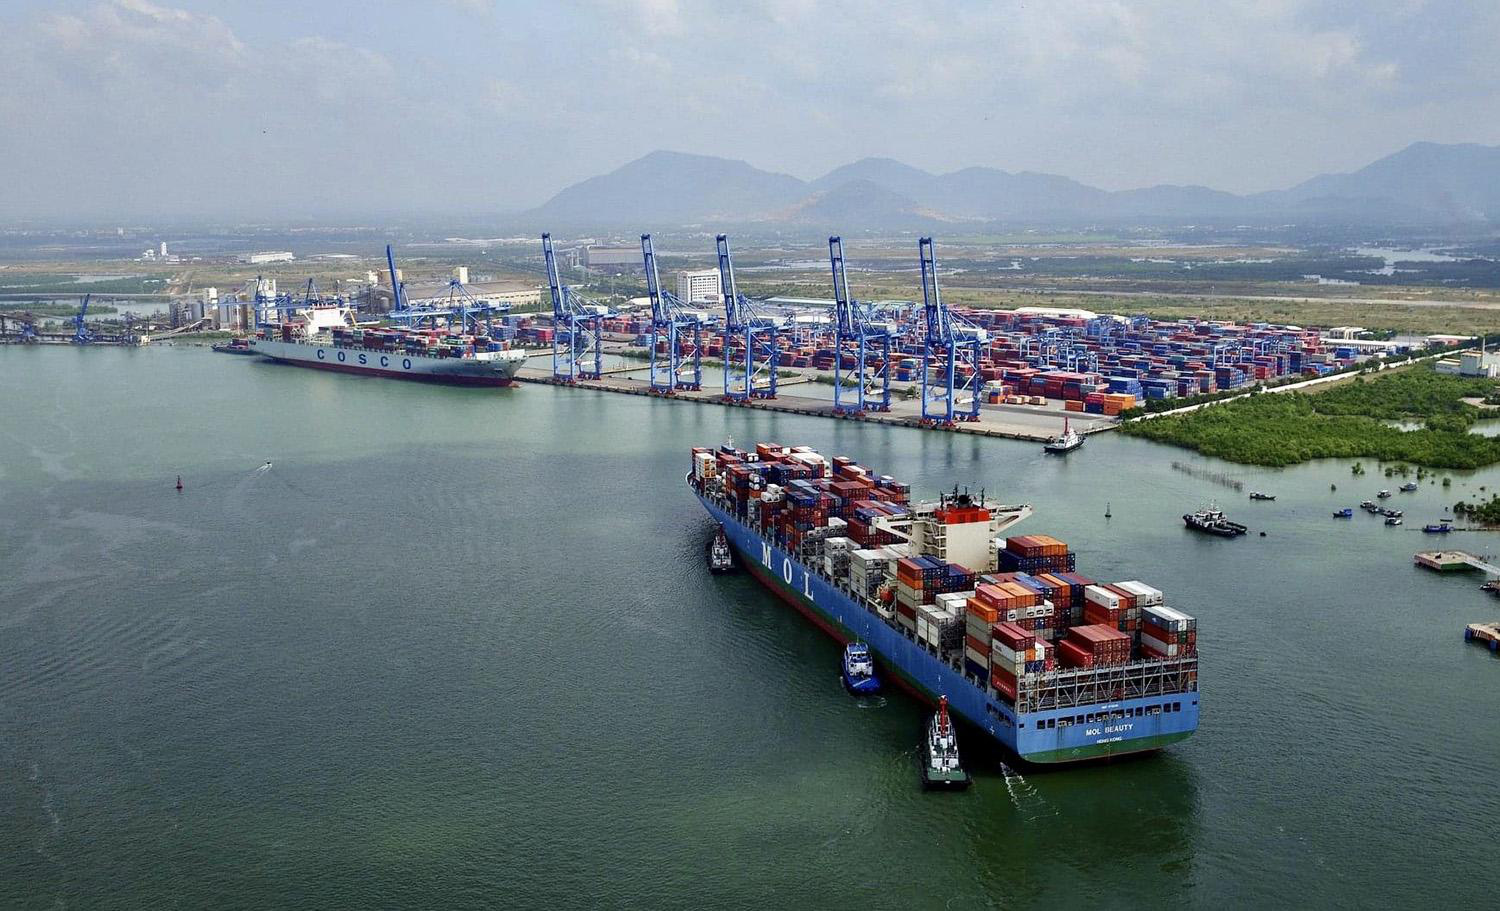 Phú Mỹ ưu tiên phát triển công nghiệp và cảng biển để thúc đẩy phát triển kinh tế với tốc độ tăng trưởng nhanh, bền vững